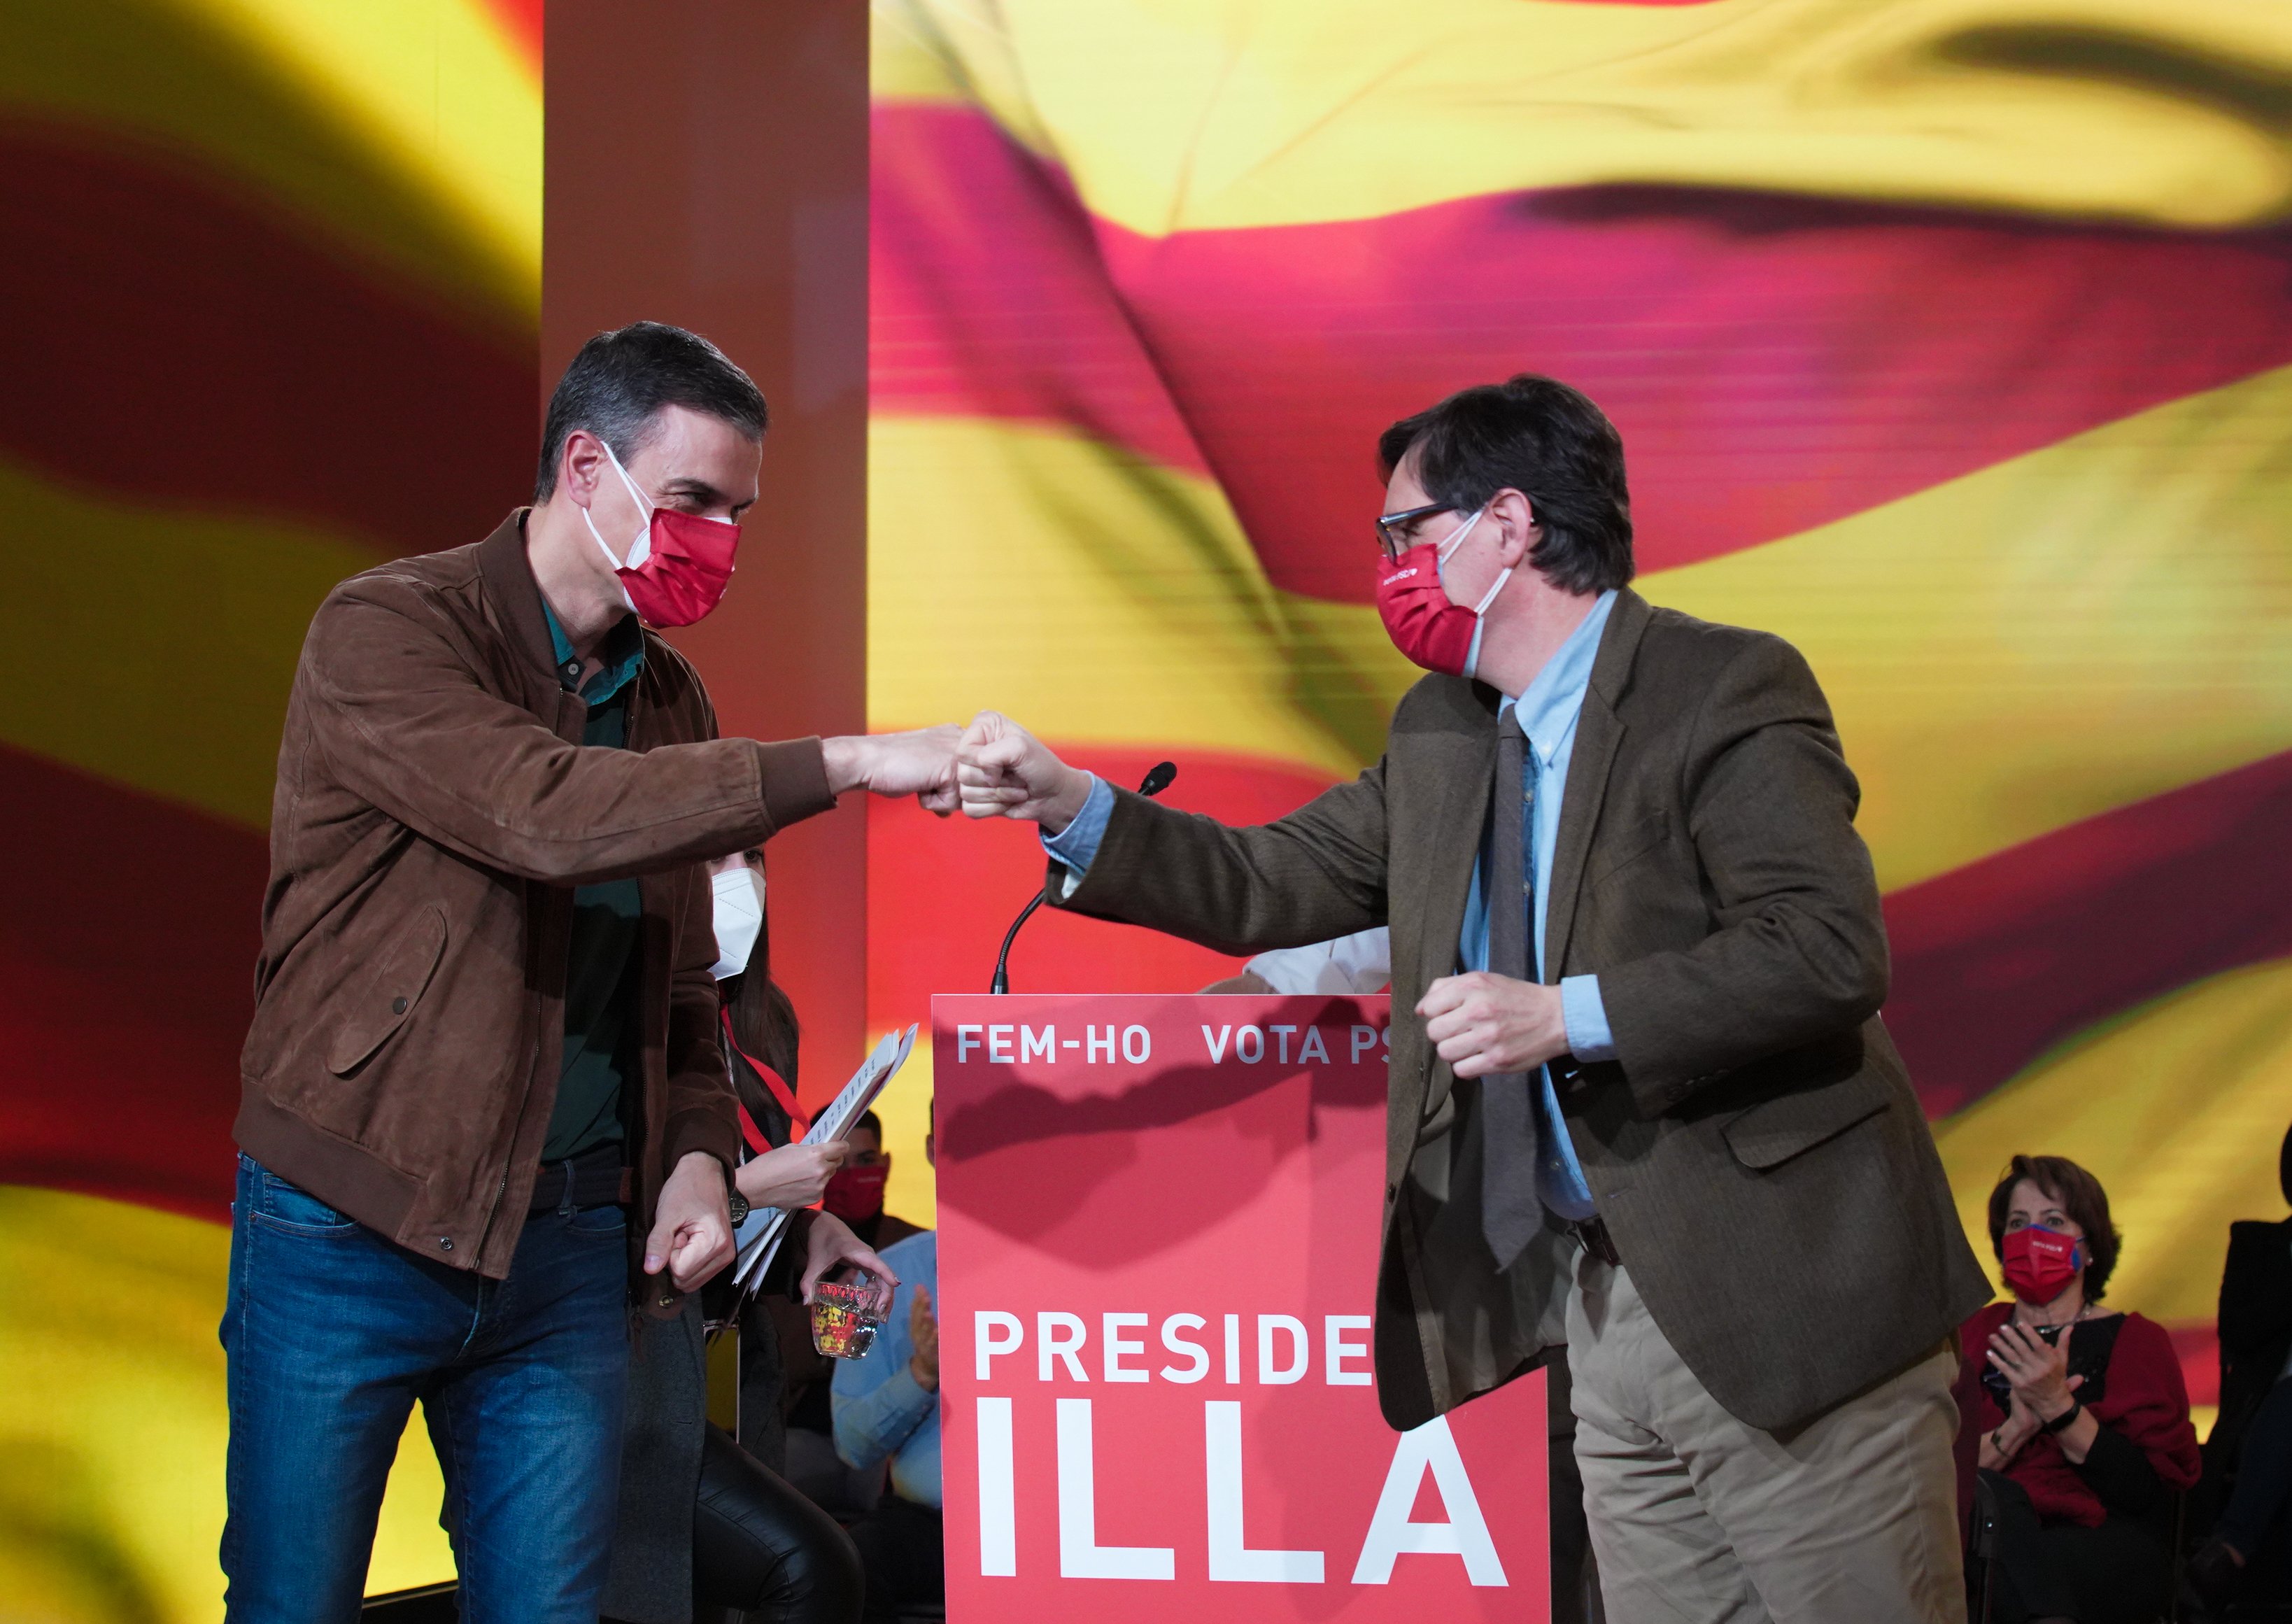 Sánchez y Illa cierran la campaña cargando contra el independentismo: "Son odio"